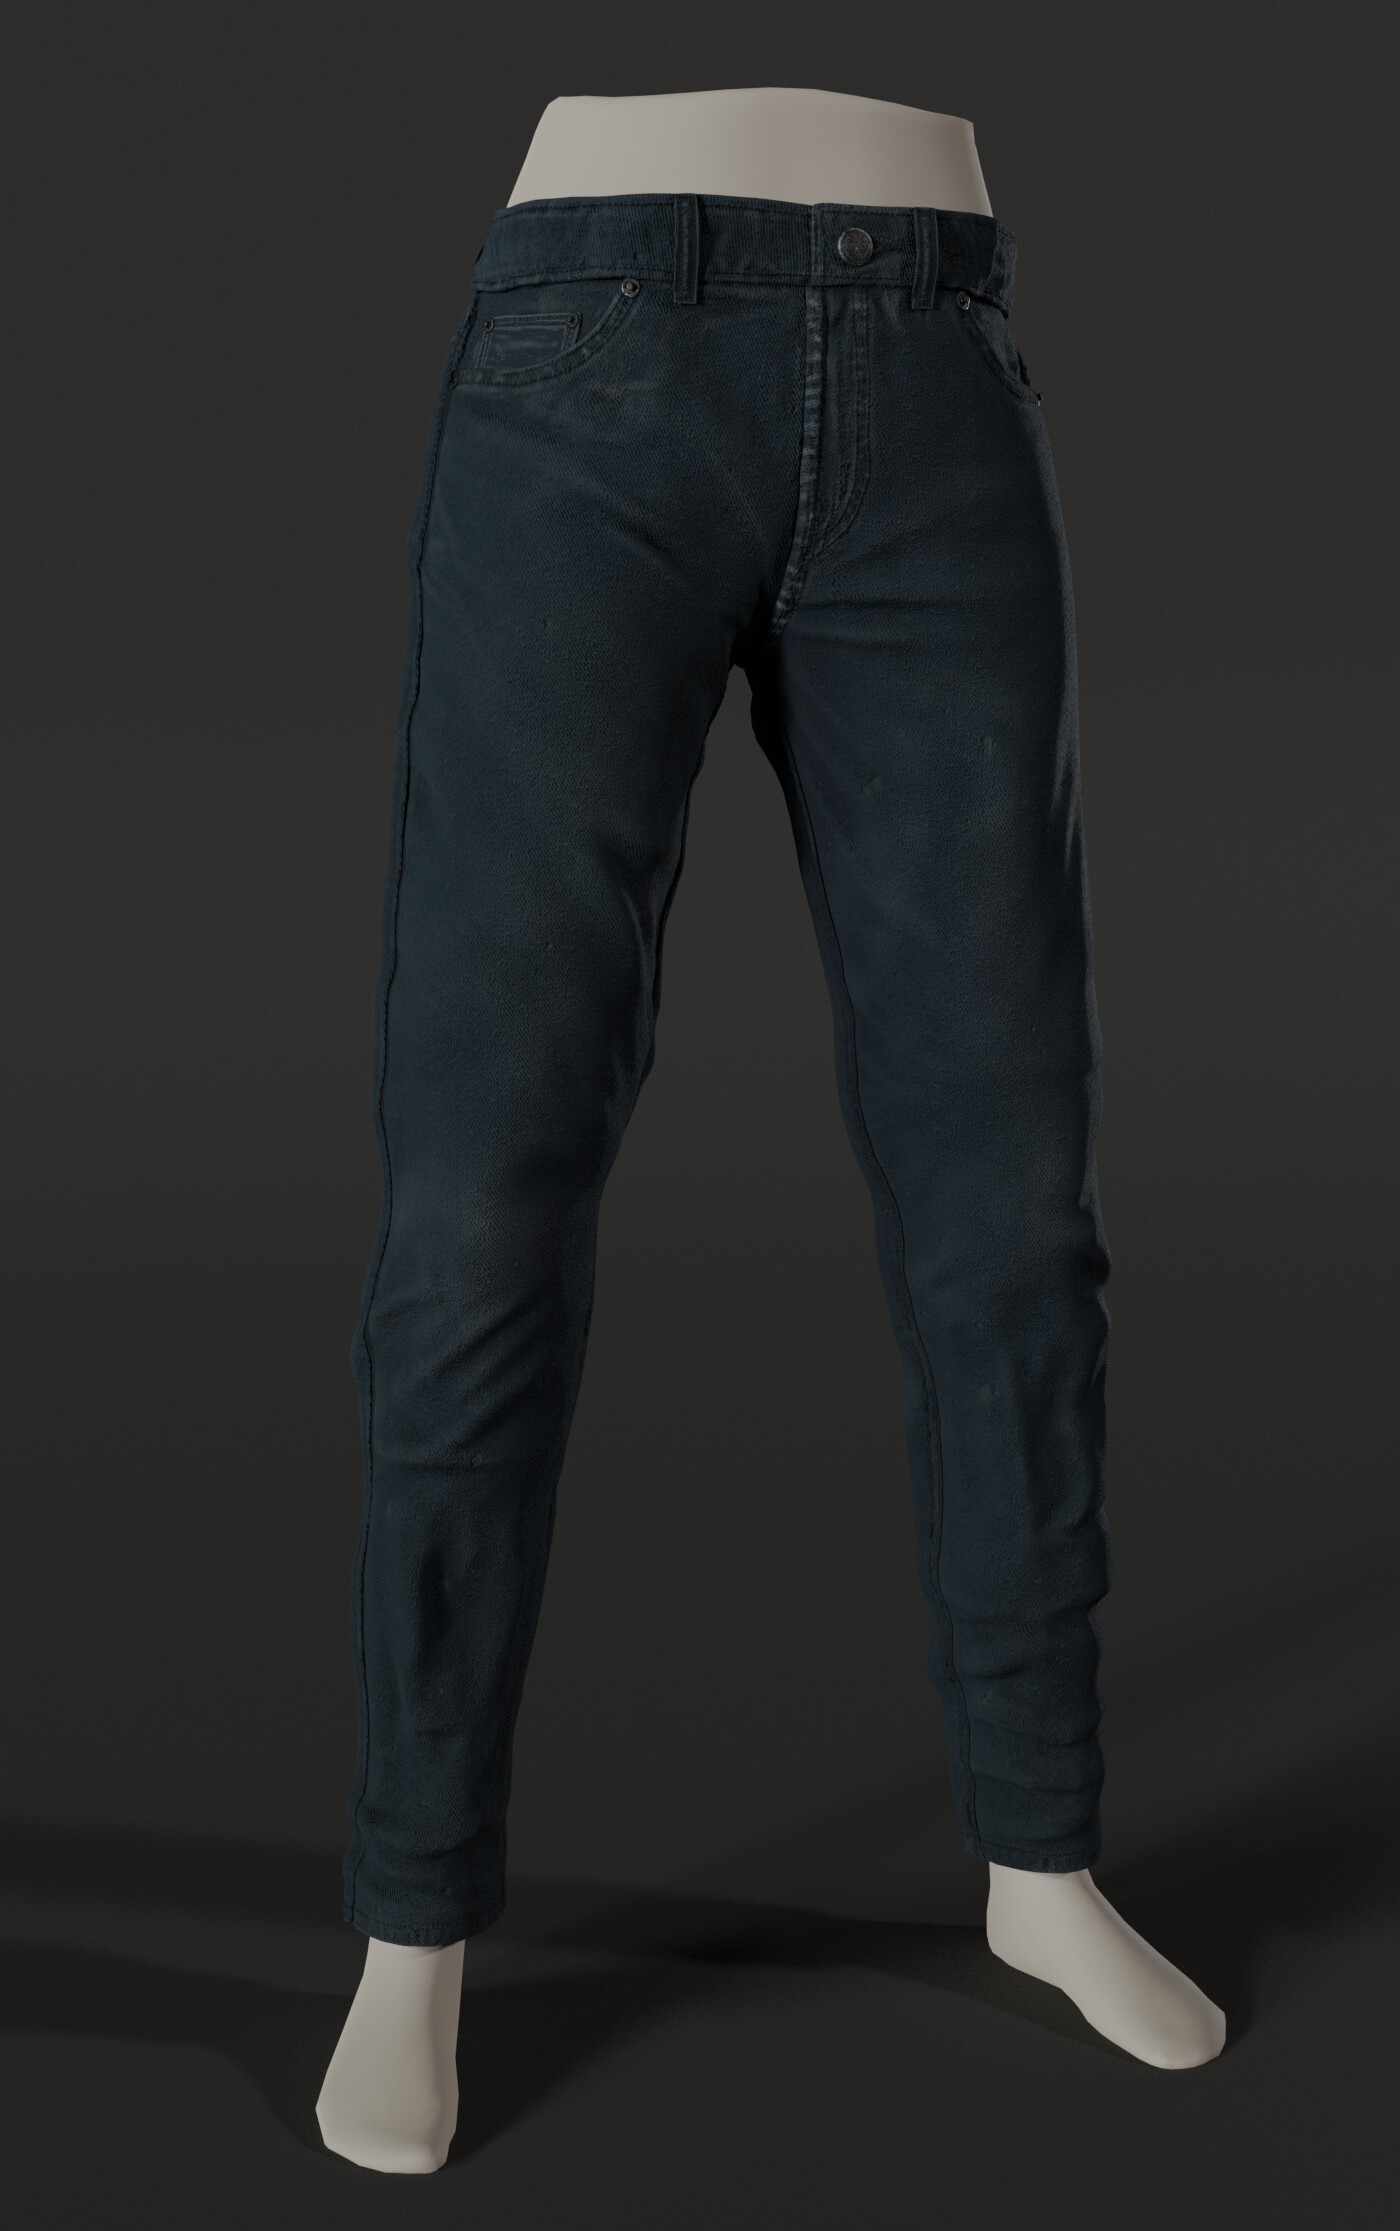 ArtStation - Jeans Denim Pants 3D Blue Grey Normal Maps Render